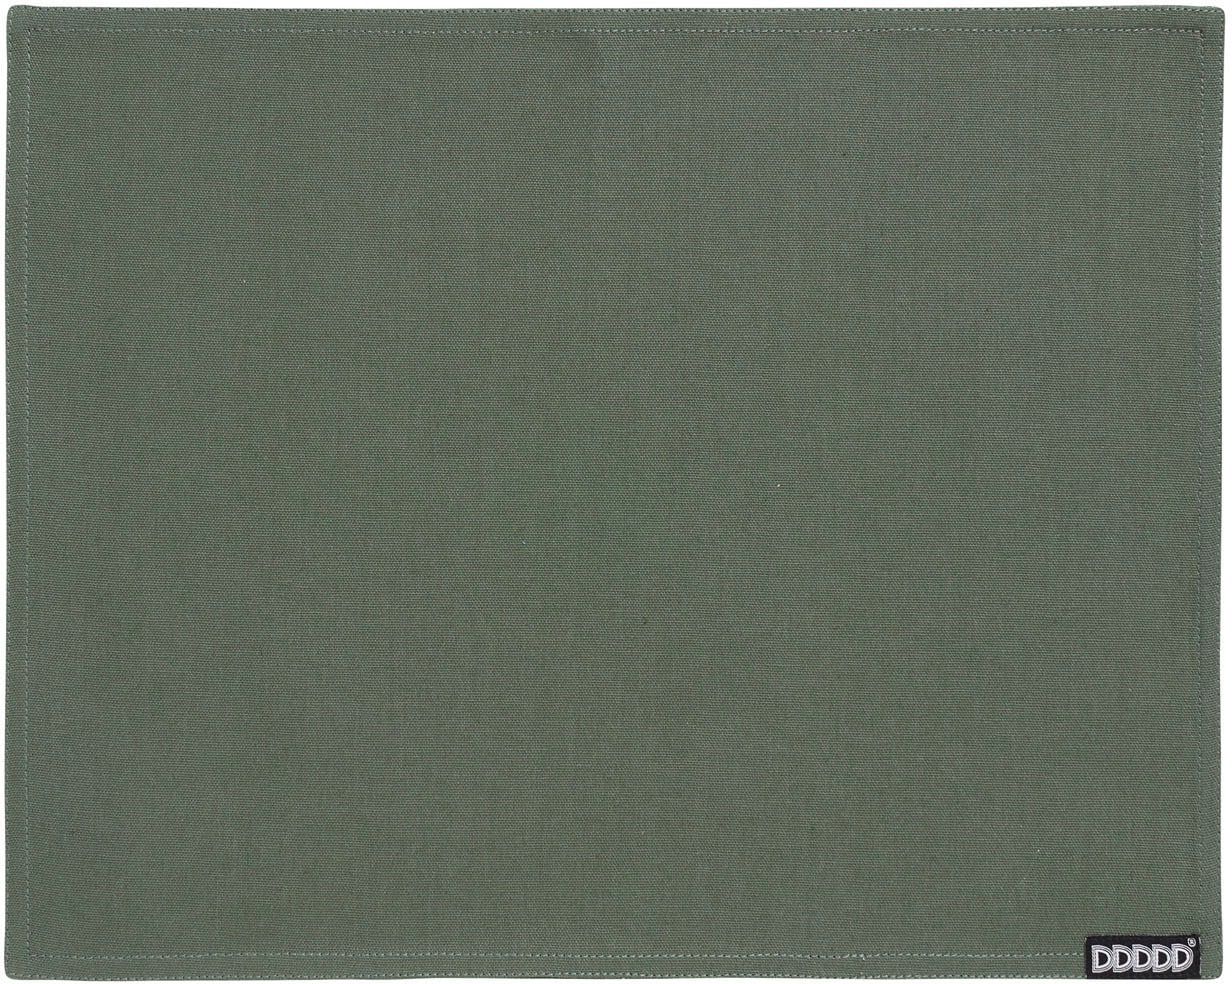 Platzdecke, 2 (Set, Platzset cm, St.), kaufen »Kit«, 35x45 Baumwolle jetzt DDDDD